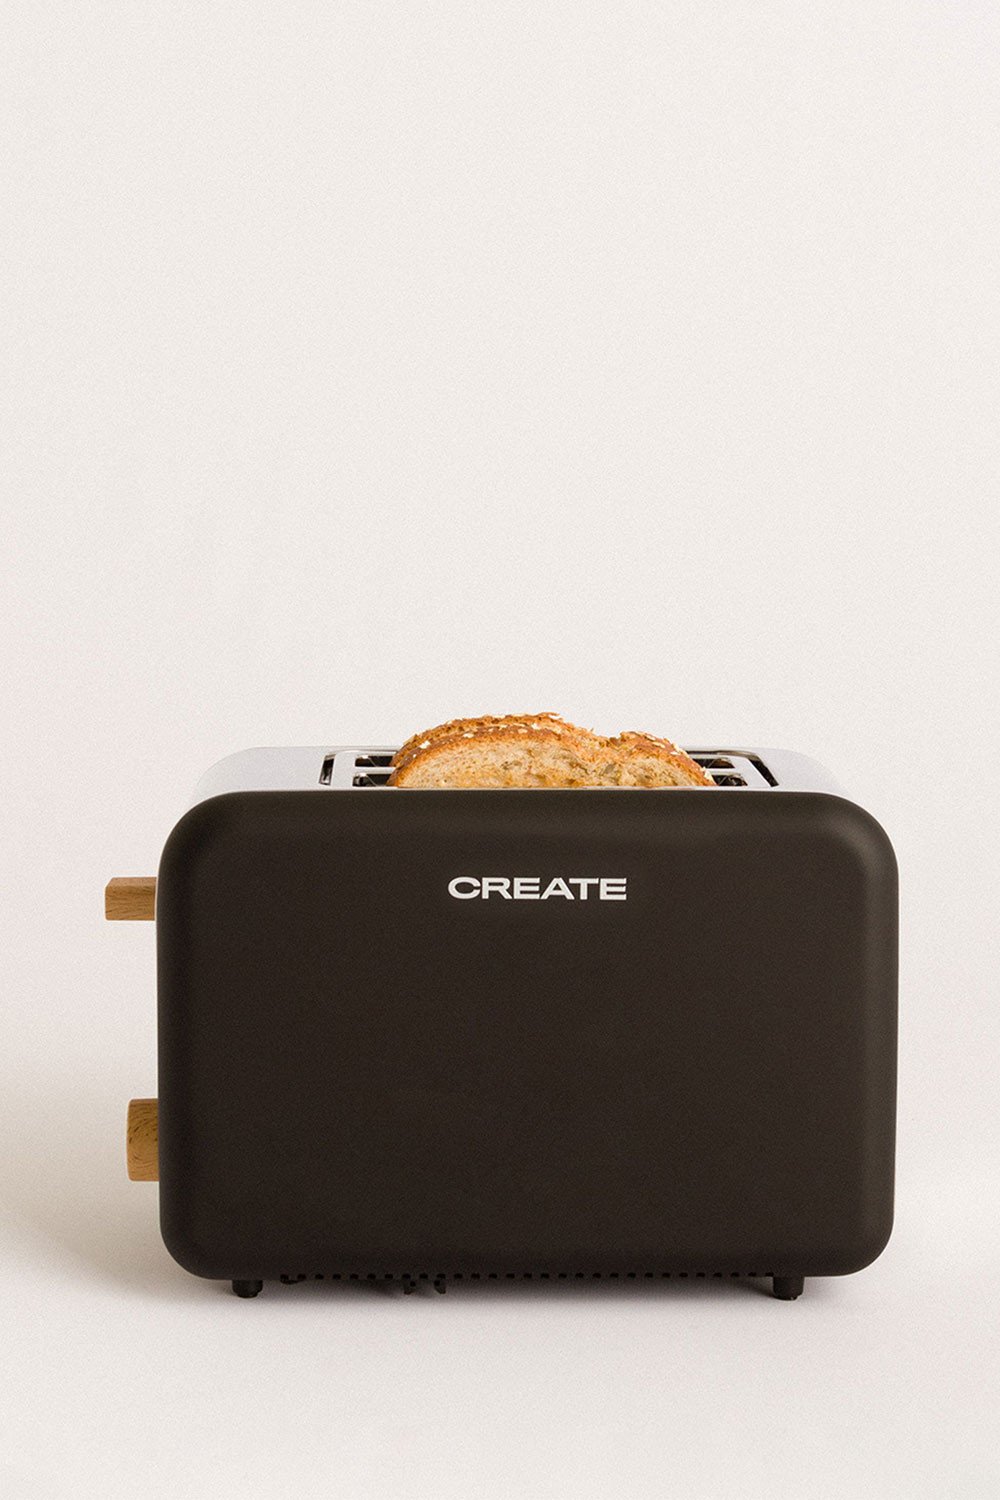 CREATE - TOAST - Toster na Szerokie Kromki, obrazek w galerii 1